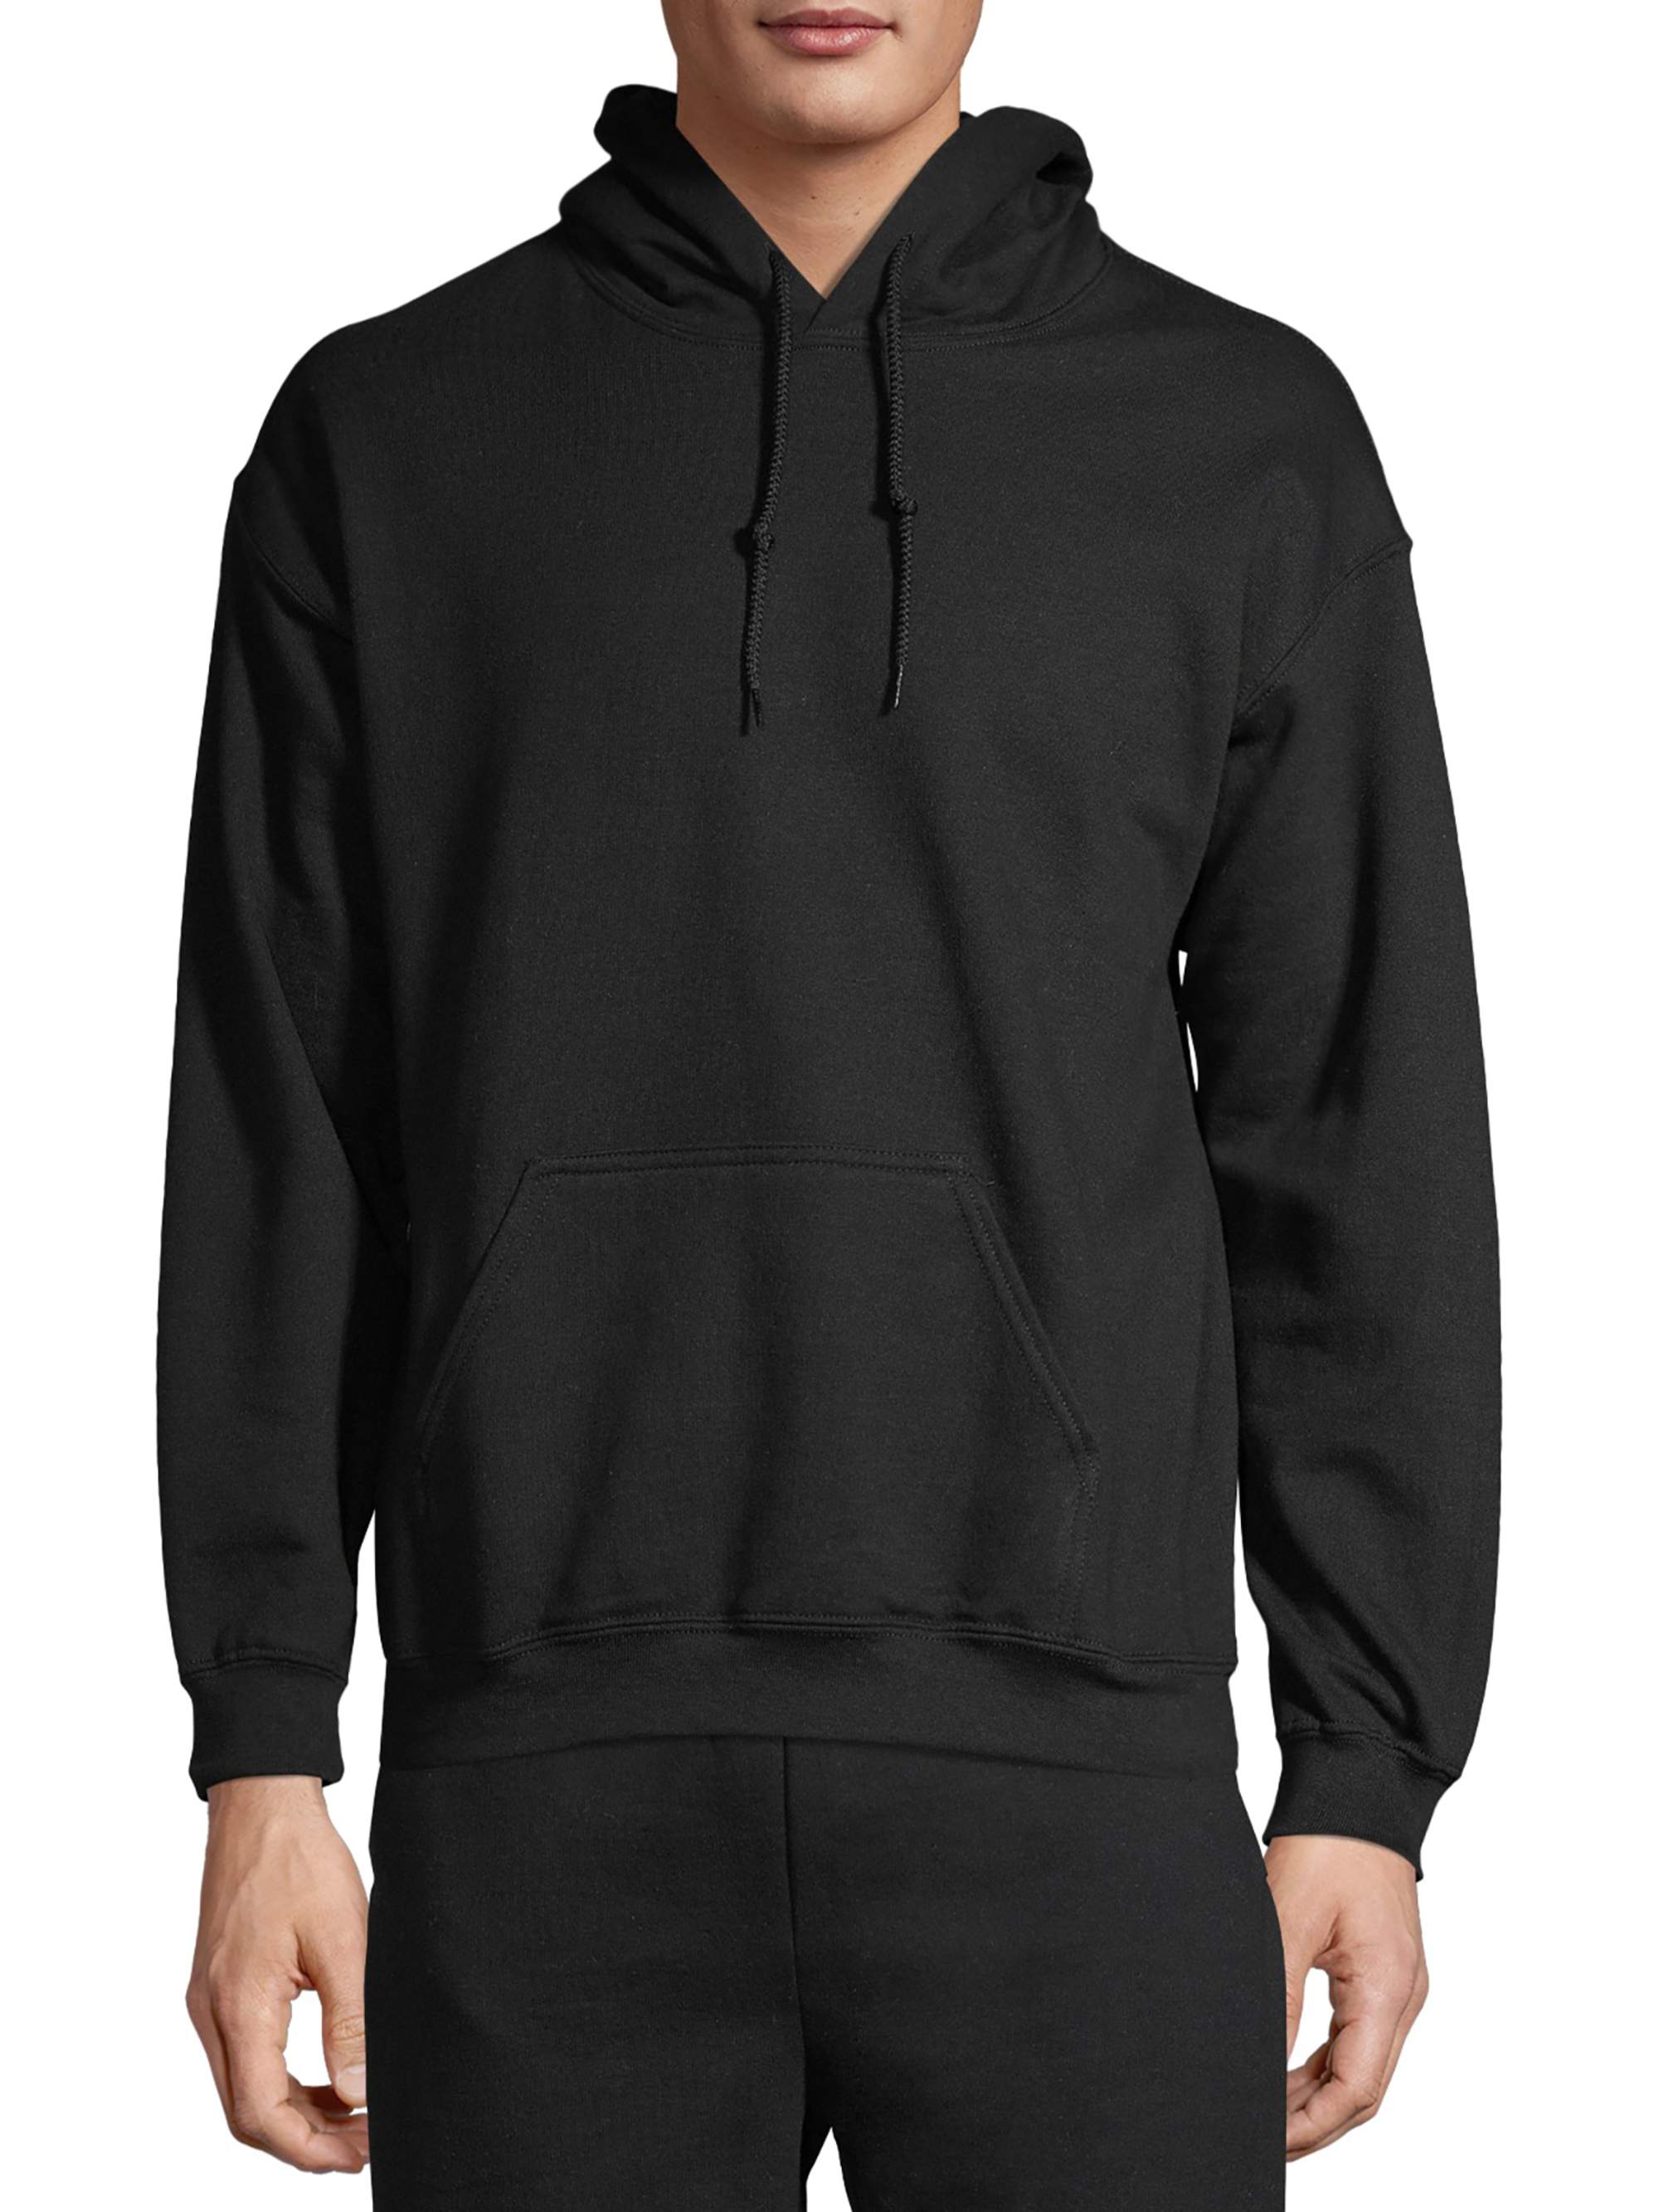 Gildan Unisex Heavy Blend Fleece Hooded Sweatshirt, Size Small to 3XL - image 2 of 6